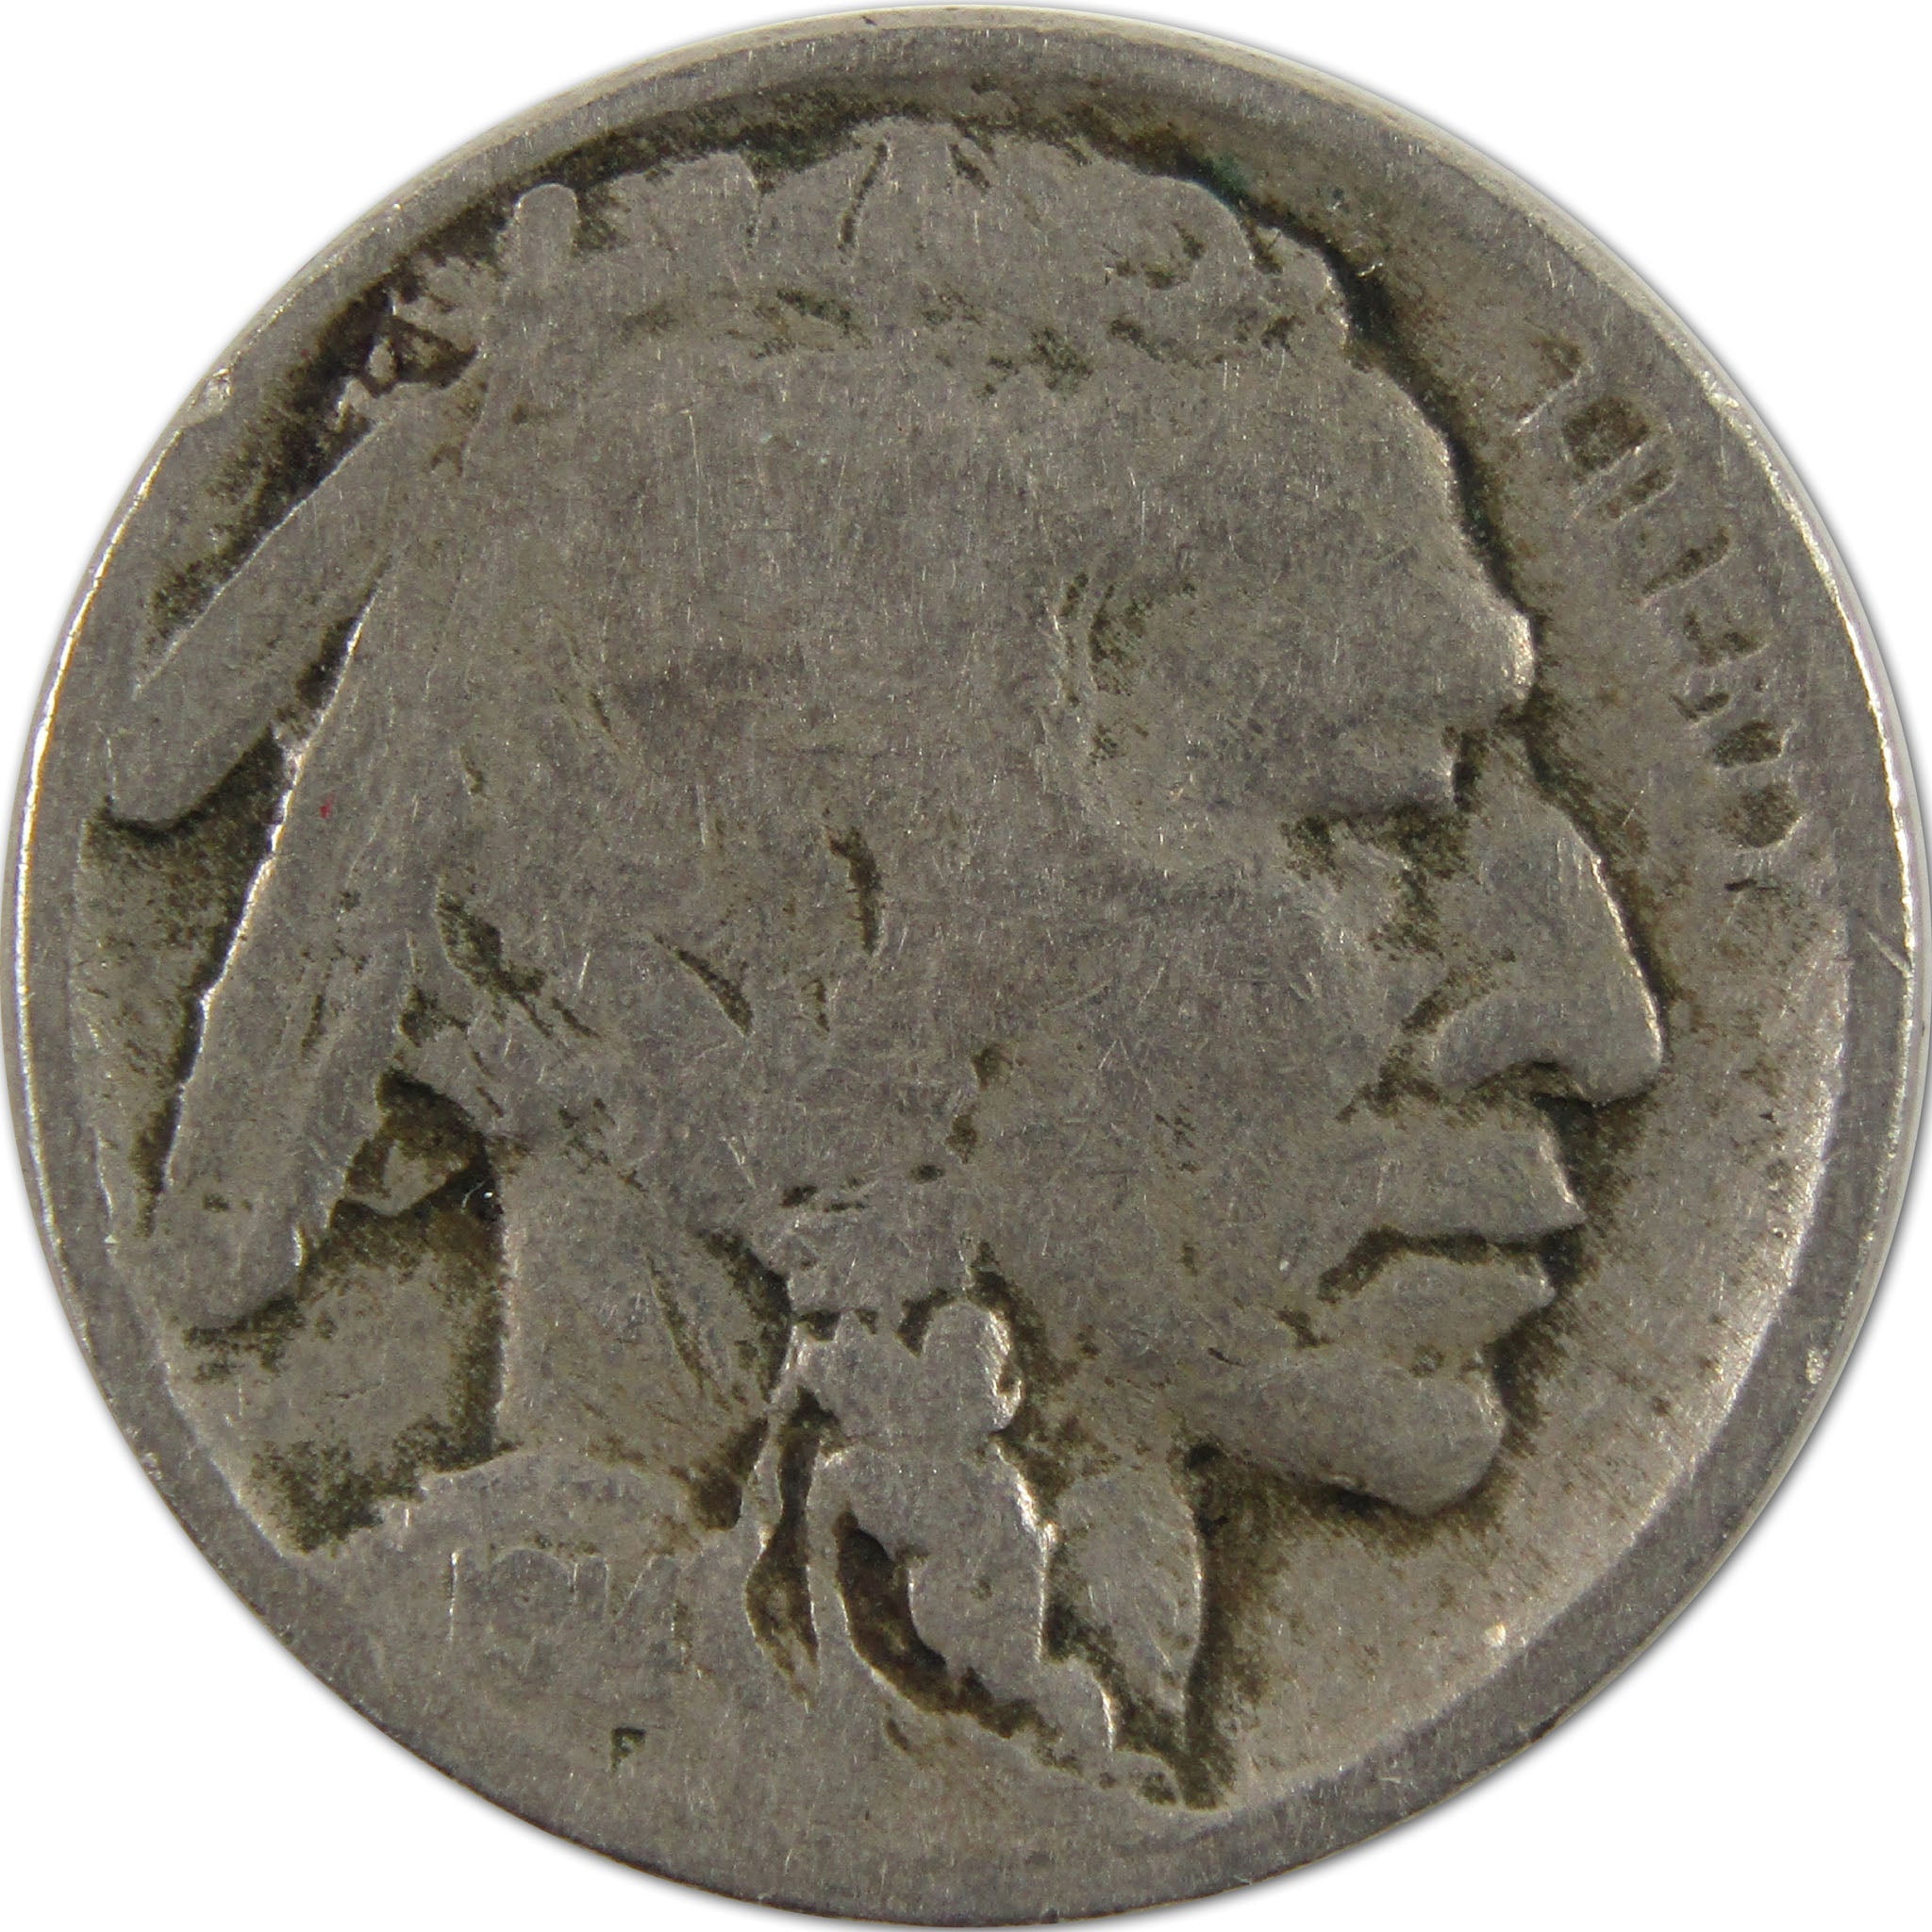 1914 Indian Head Buffalo Nickel VG Very Good 5c Coin SKU:I10350